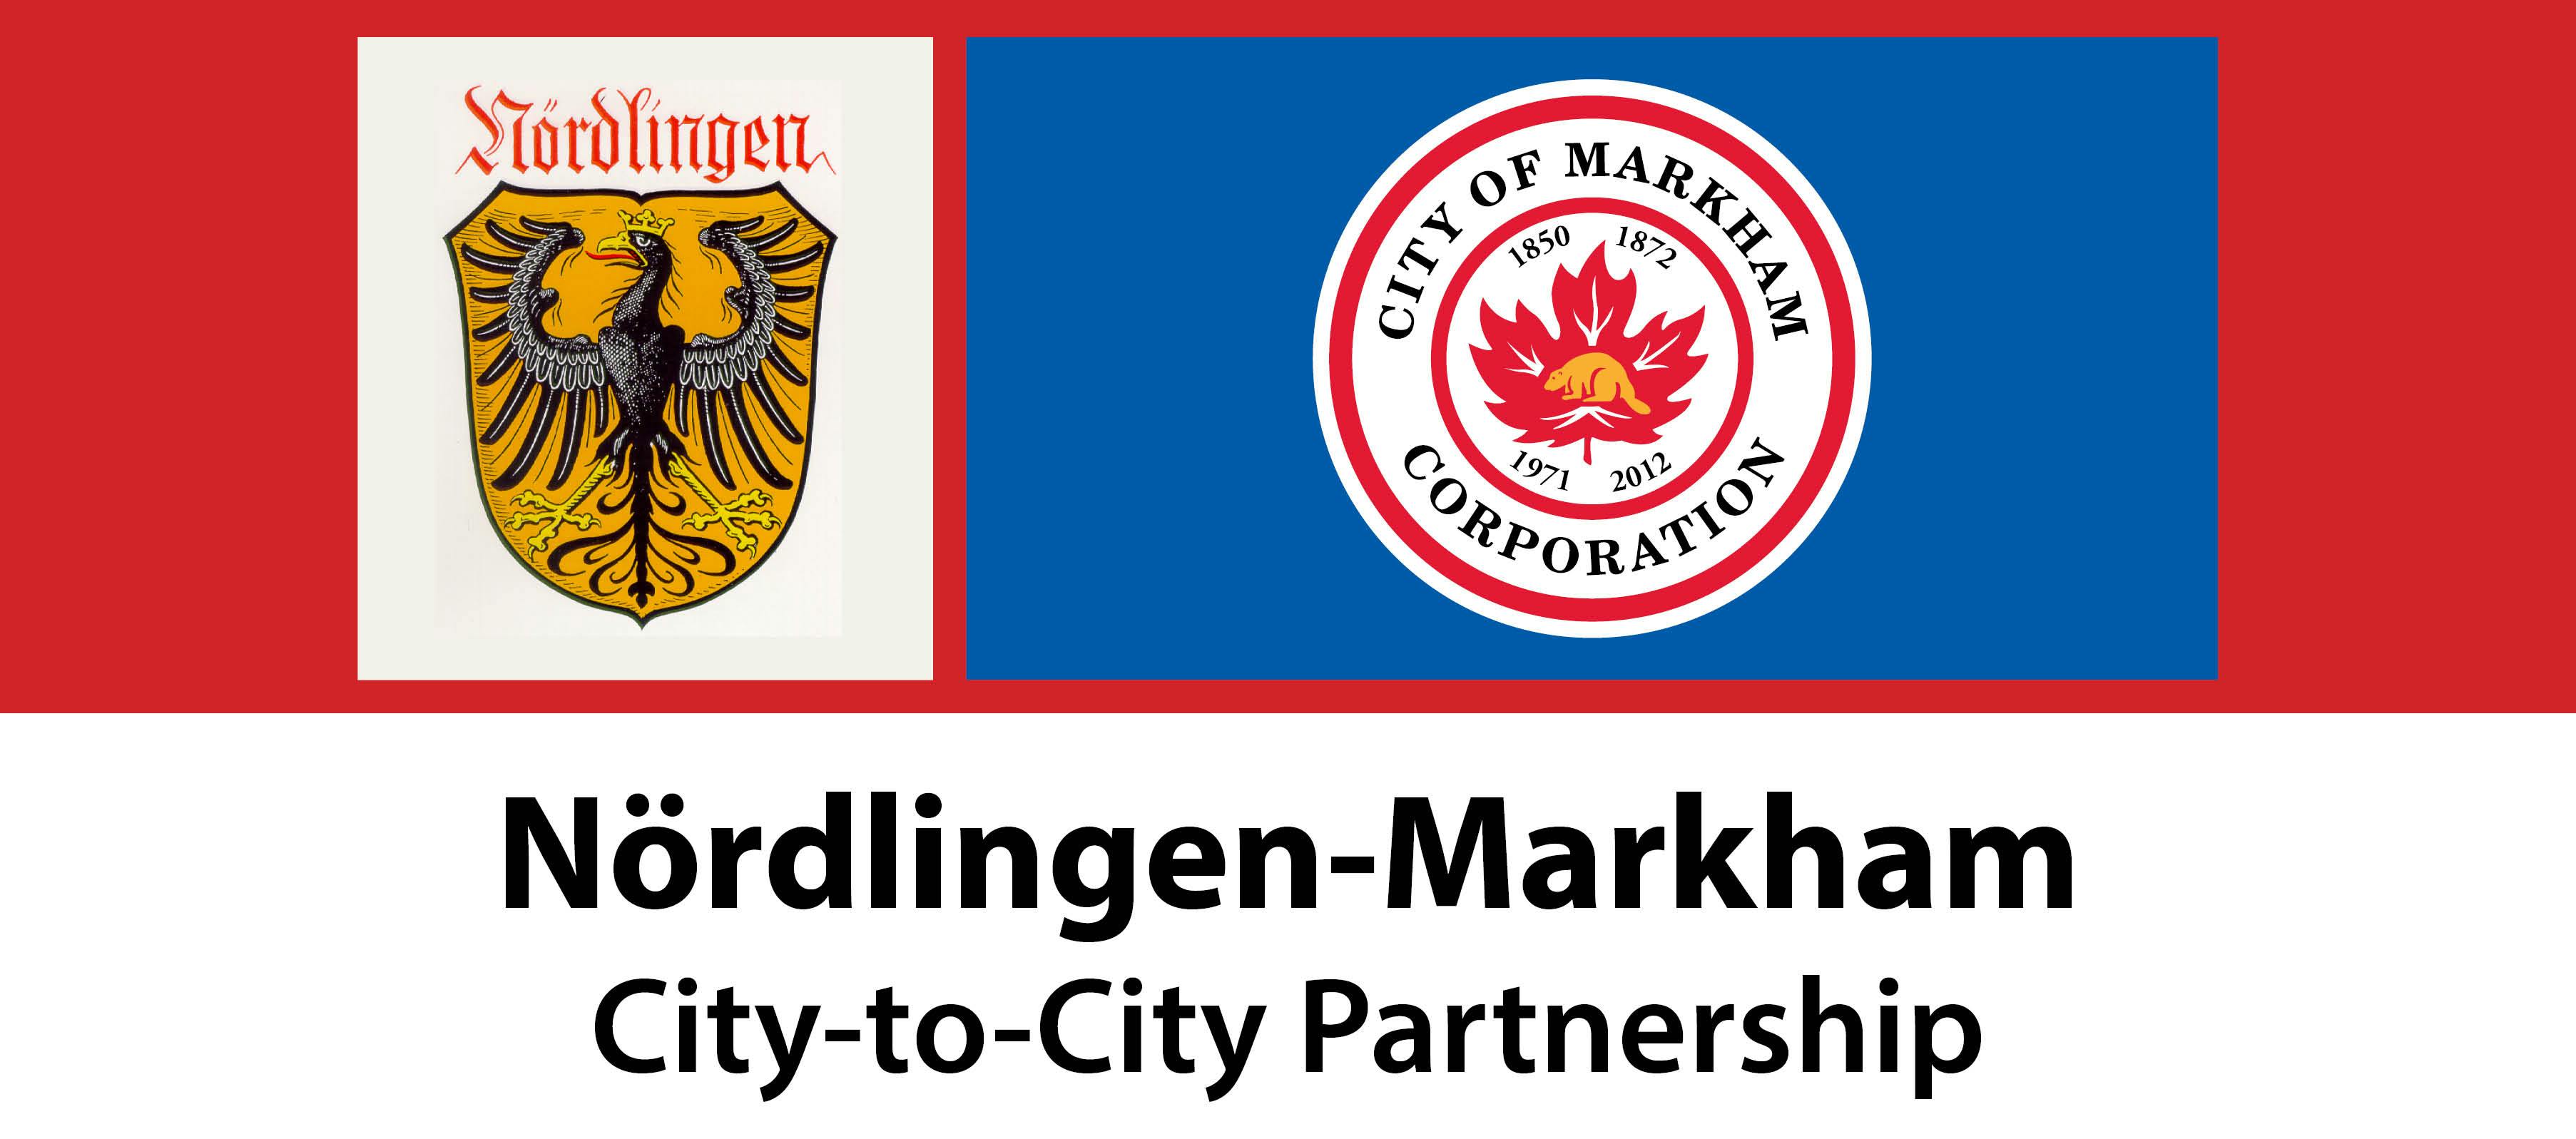 Nordlingen and Markham Identifiers with caption Nordlingen-Markham City-to-City Partnership